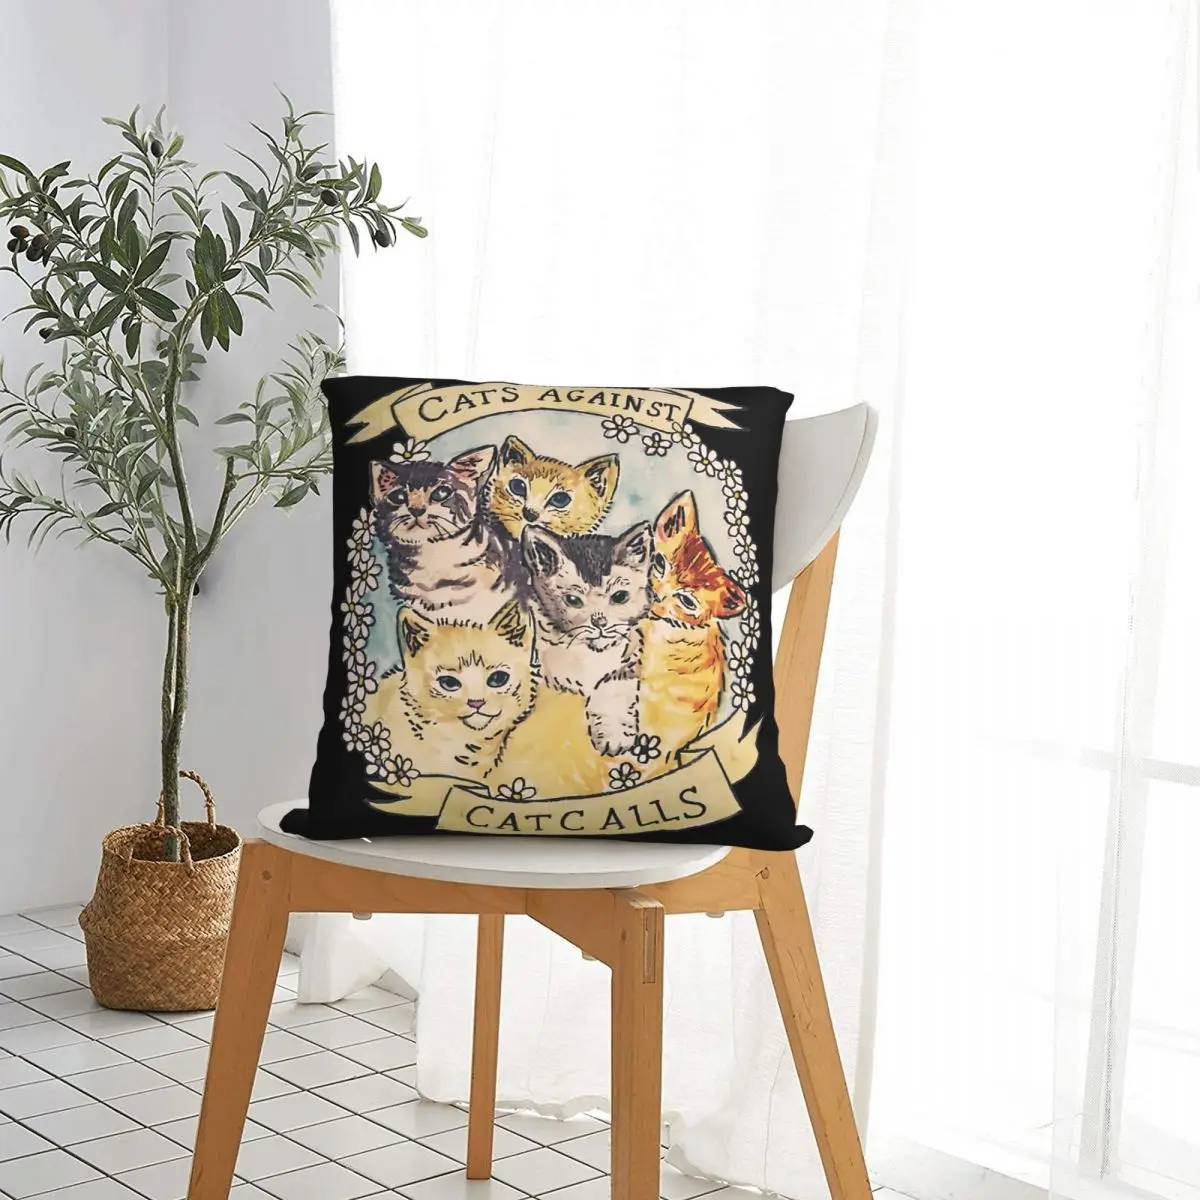 Кошки Против кошачьих призывов Оригинальная наволочка для наволочек Художественный рюкзак чехол Cojines с принтом 